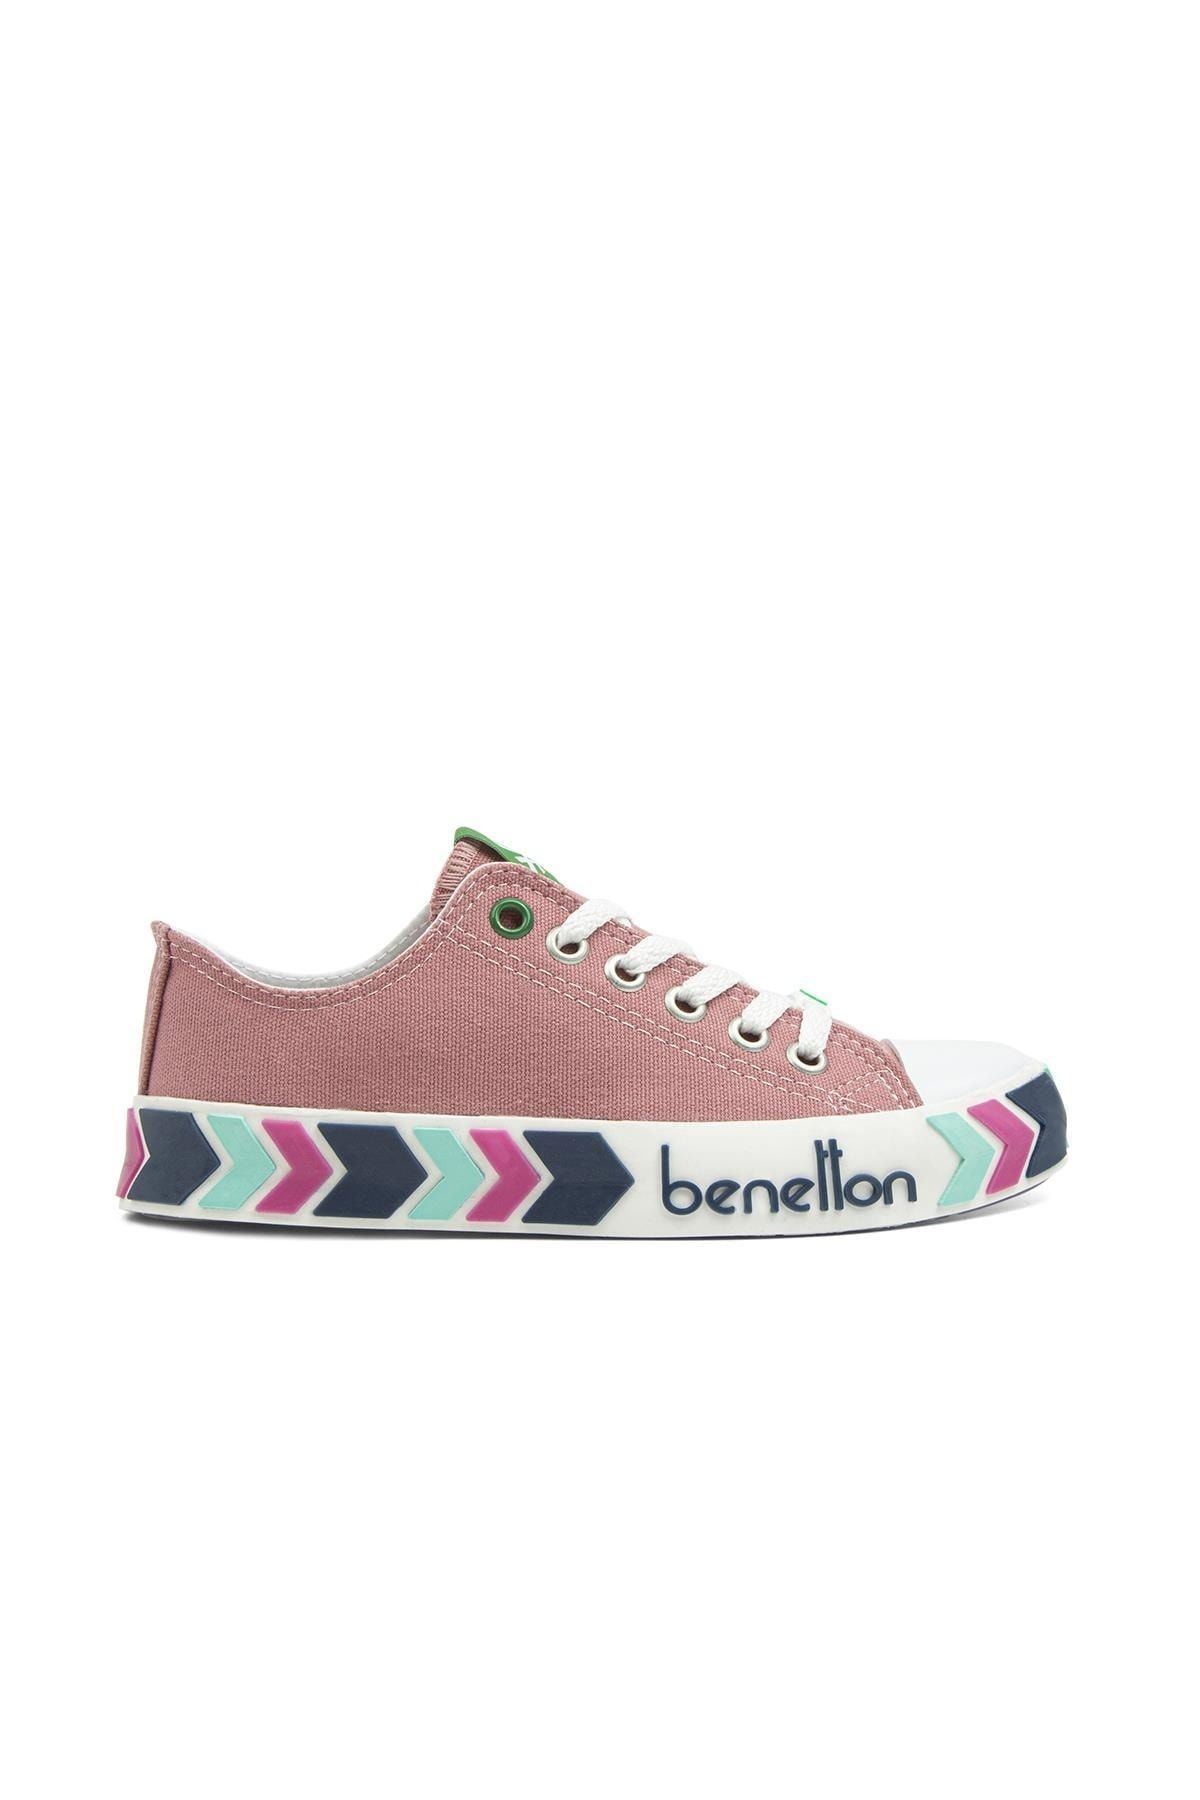 Benetton ® | Bn-30620-3374 Gul Kurusu - Kadın Spor Ayakkabı